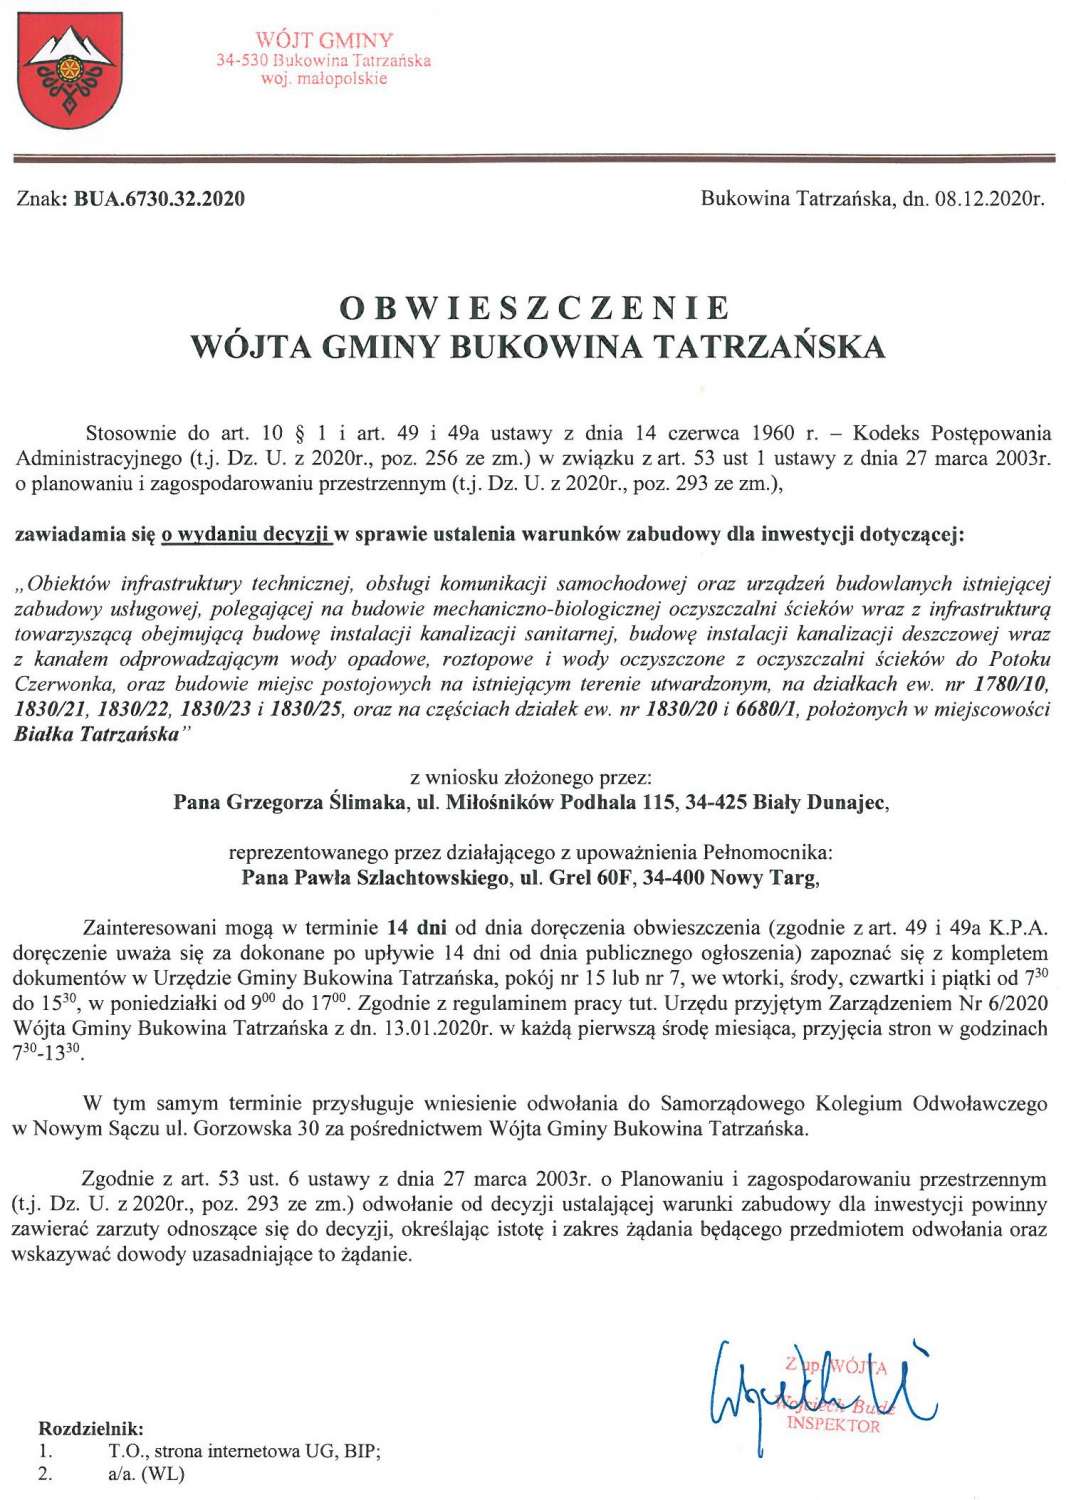 Obwieszczenie Wójta Gminy Bukowina Tatrzańska BUA 6730.32.2020